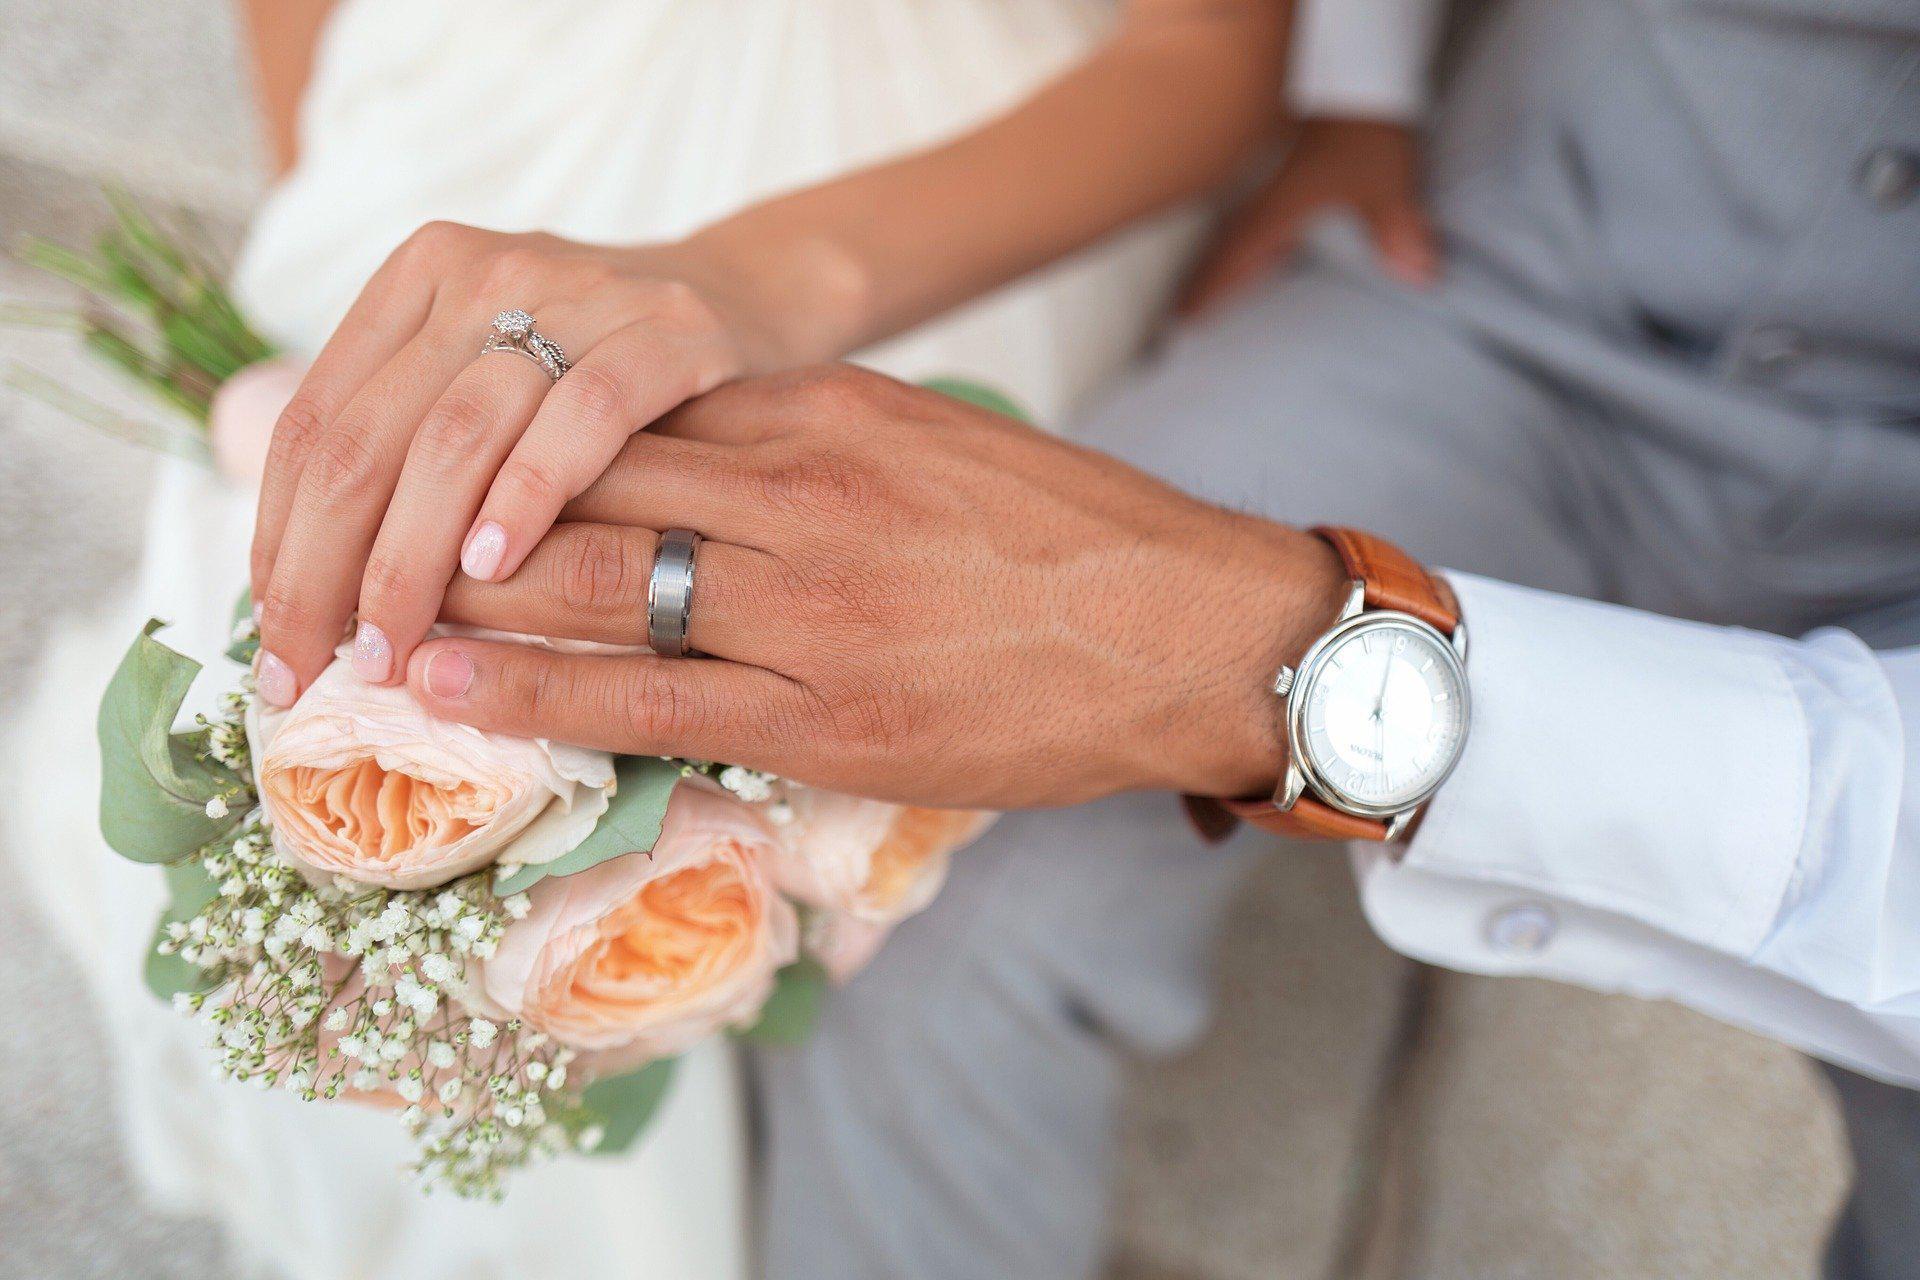 Erken yaşta evlilik hakkında kimsenin söylemediği gerçekler